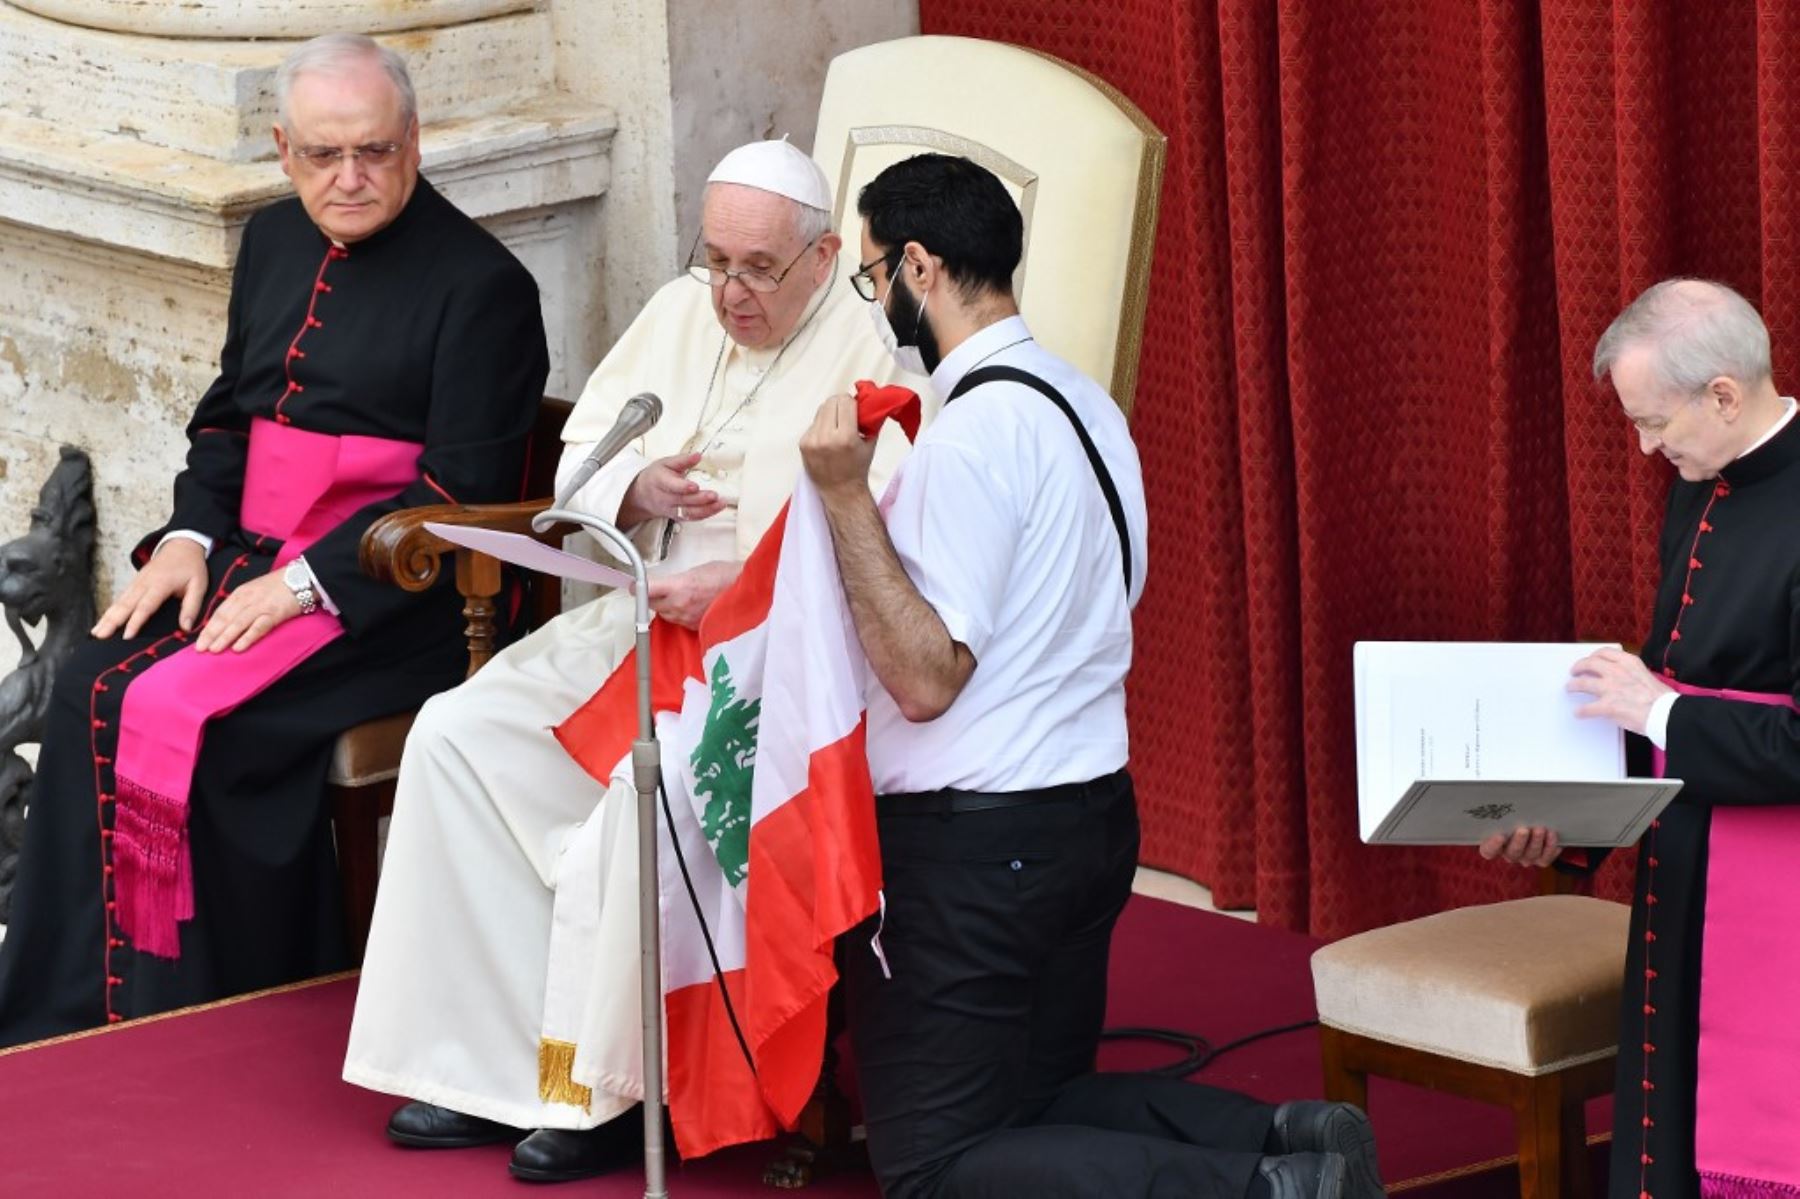 Sosteniendo la bandera del Líbano un fiel saluda al Papa Francisco, durante la audiencia pública limitada en el Vaticano. Foto:AFP